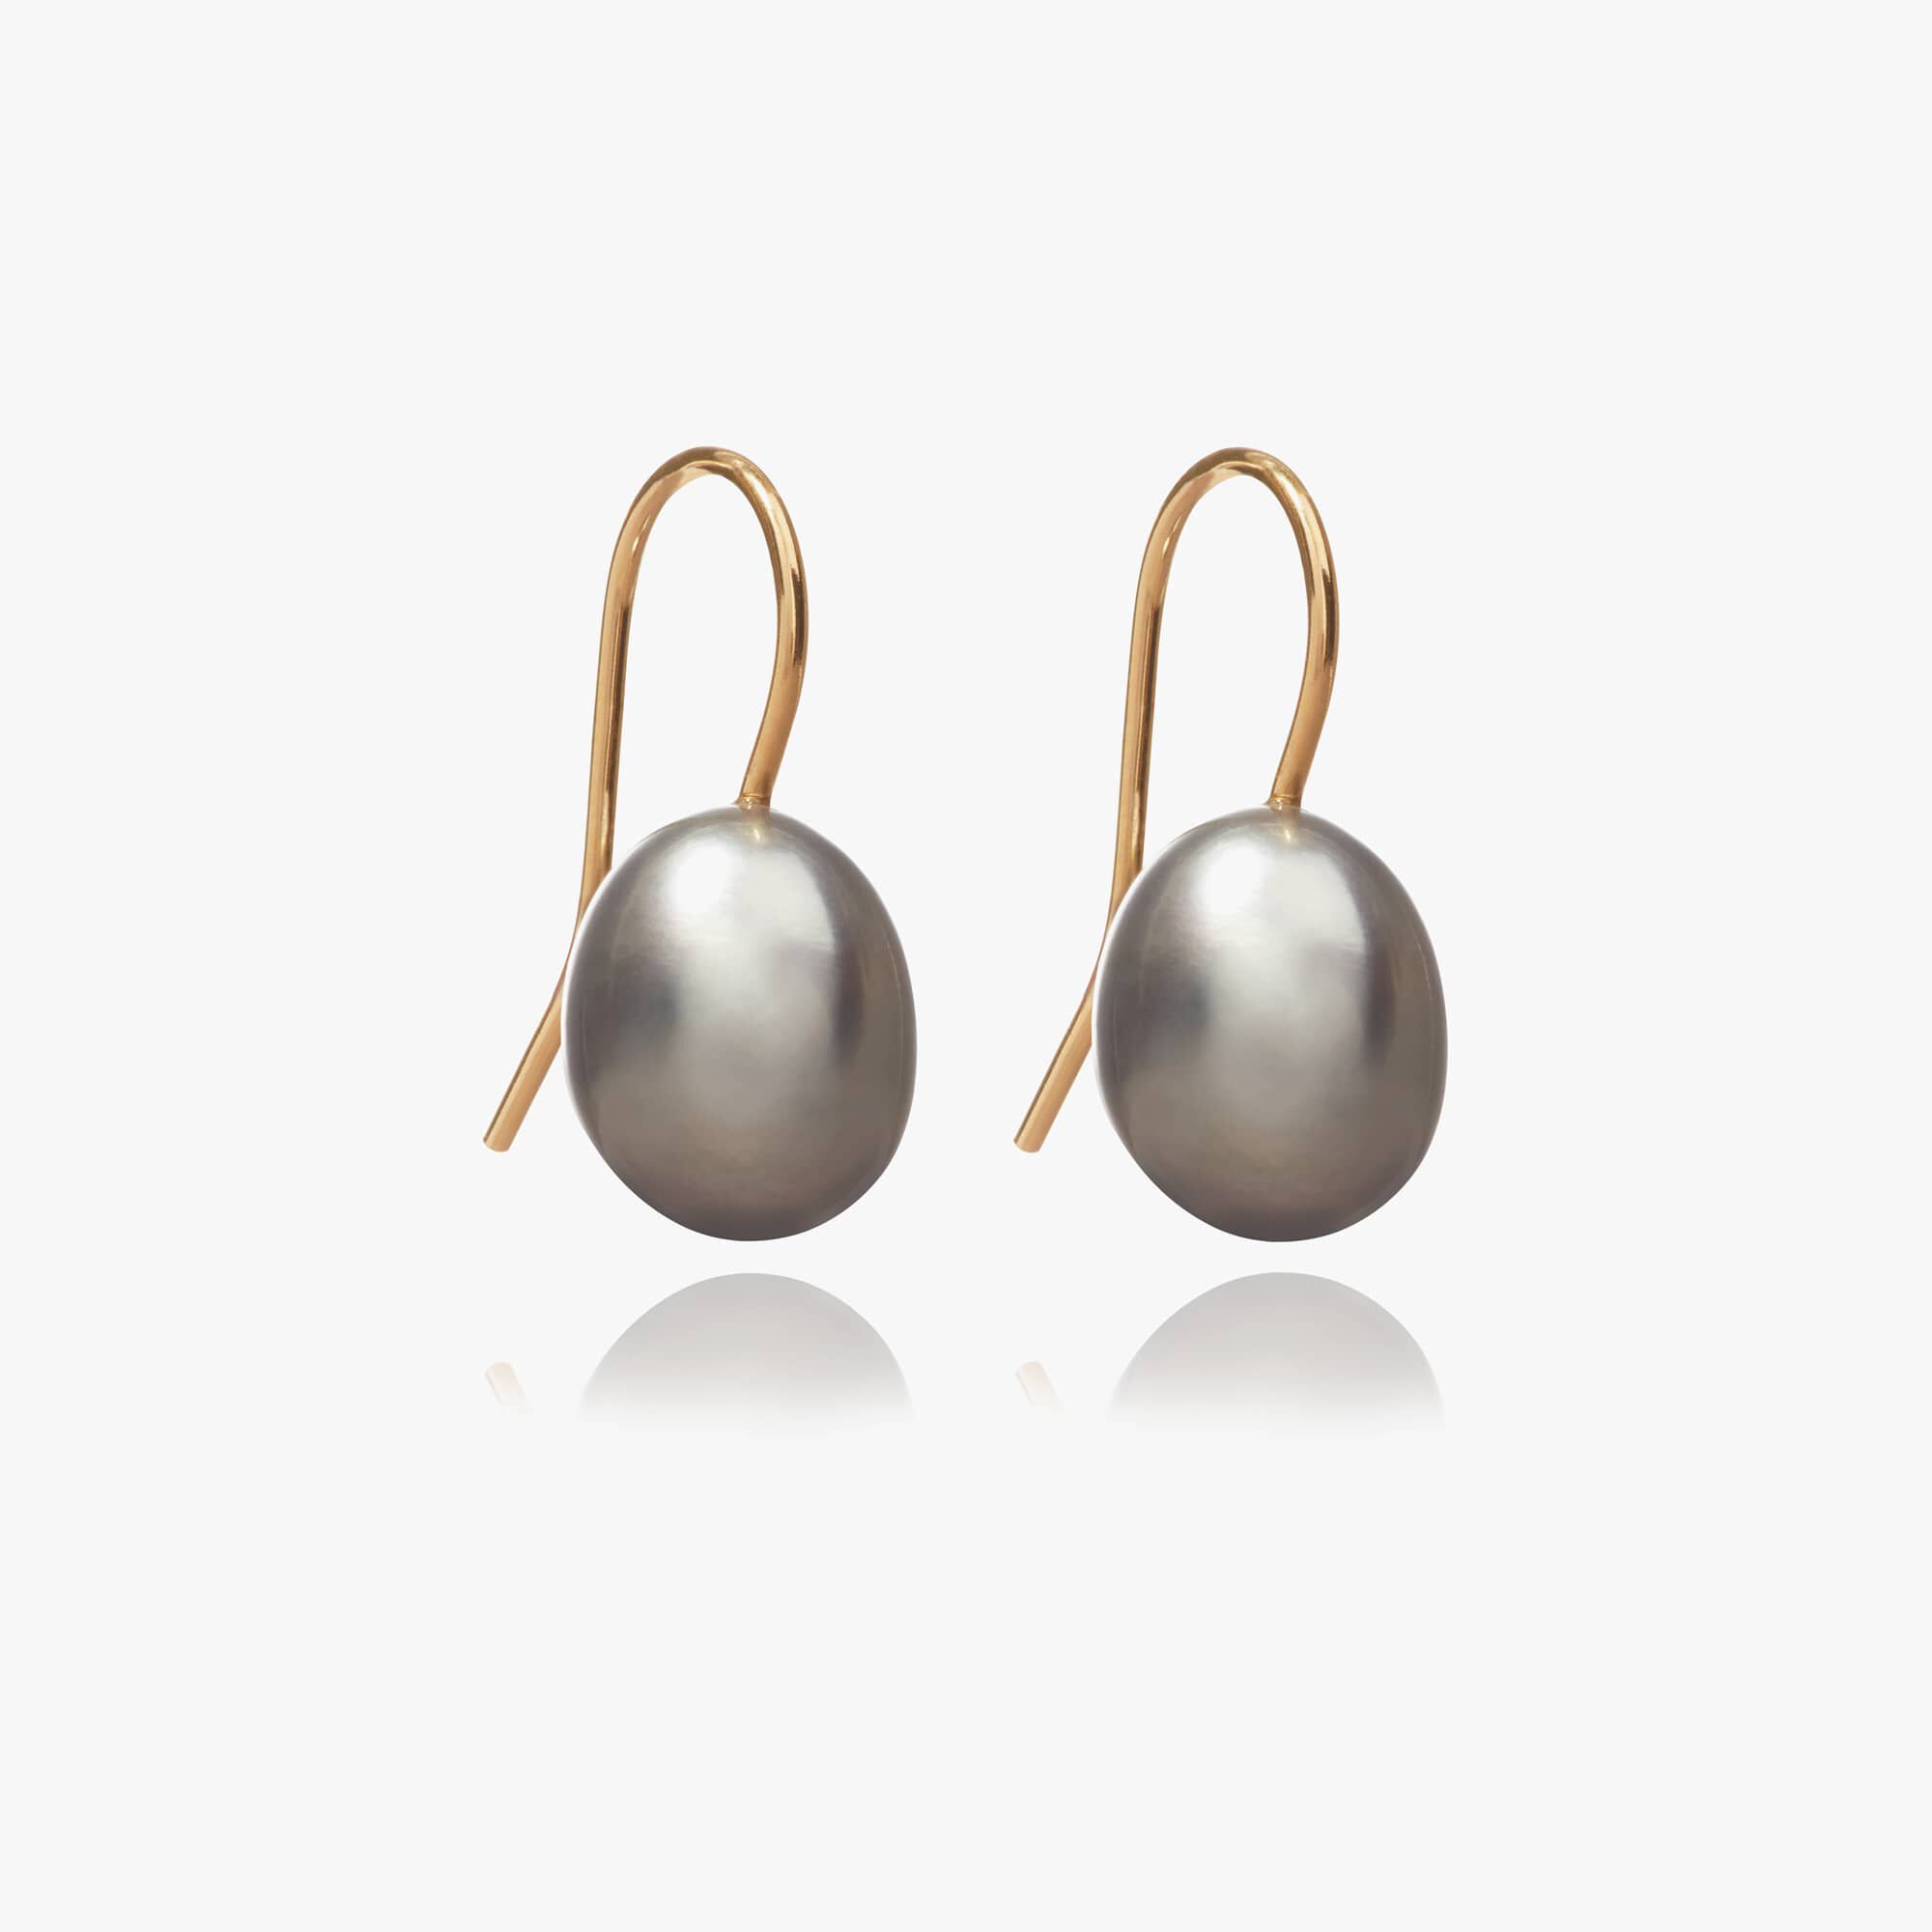 Details about   Purple Baroque Pearl Earring Gold Ear Drop Hook Wedding Dangle Gift Women 